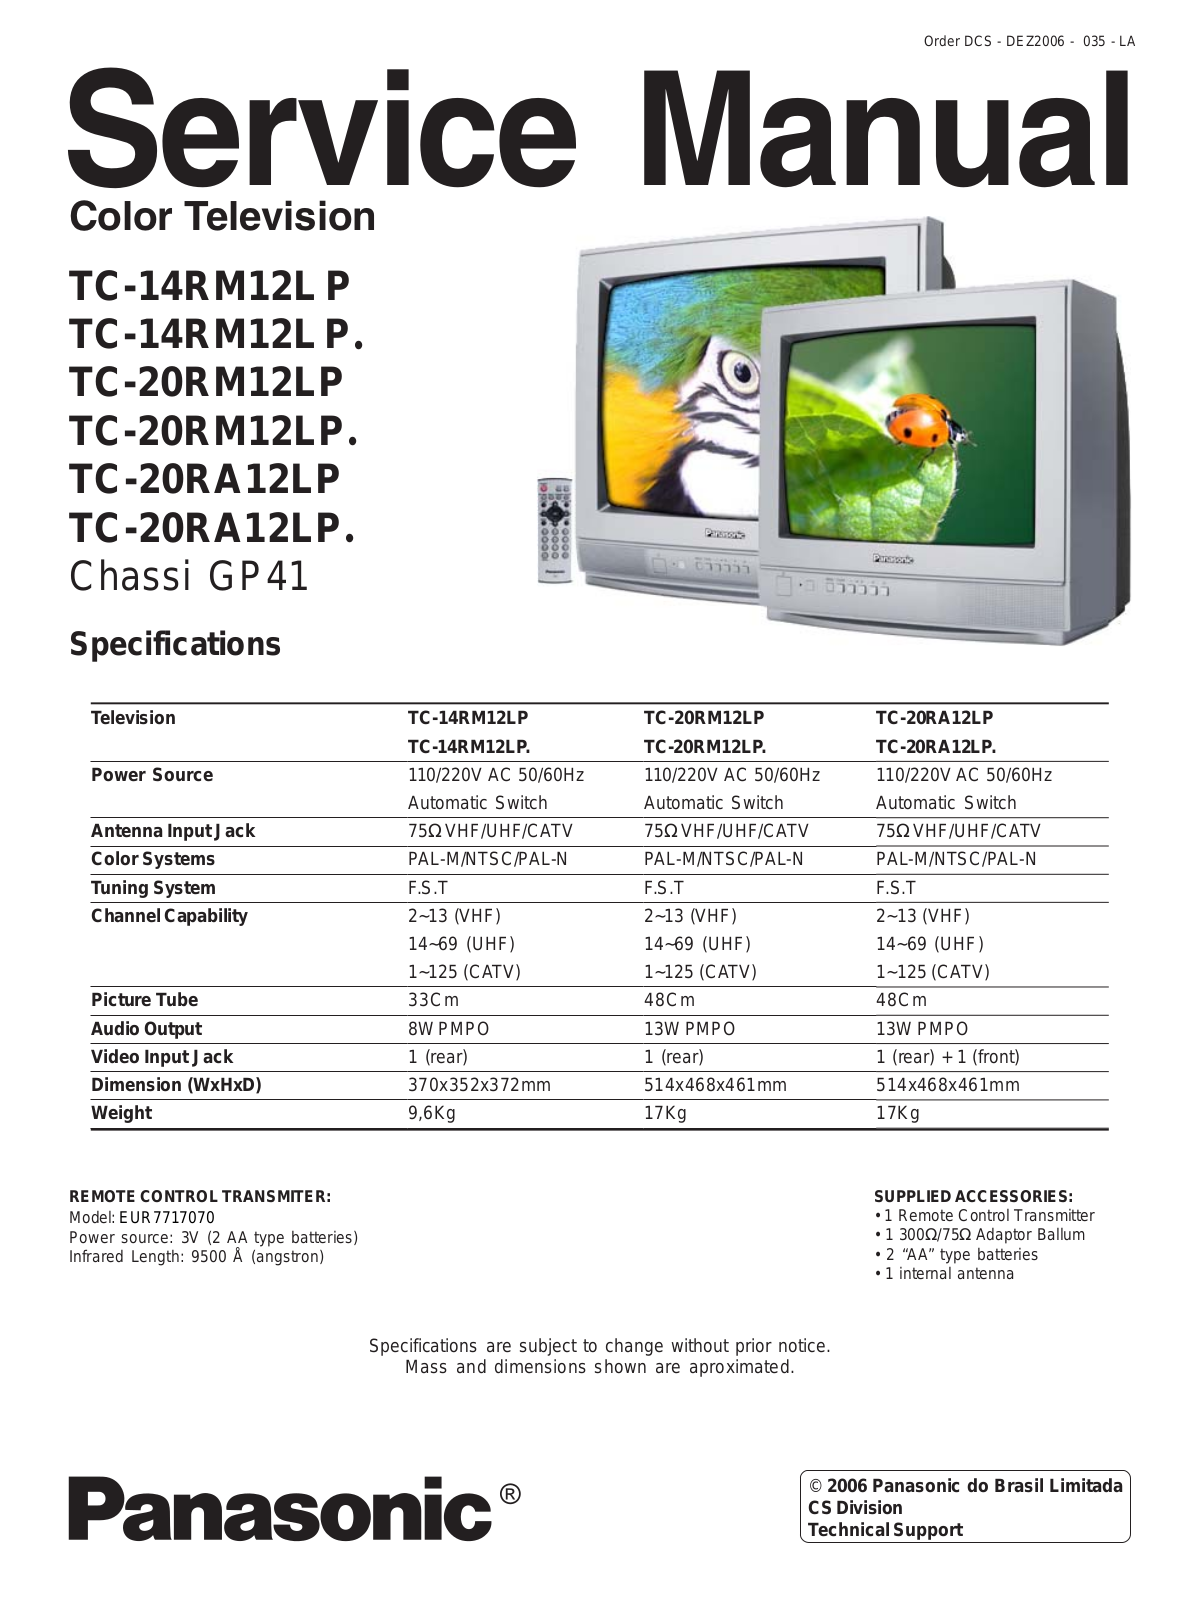 Panasonic TC-14RM12L P, TC-20RM12LP, TC-20RA12LP Service Manual